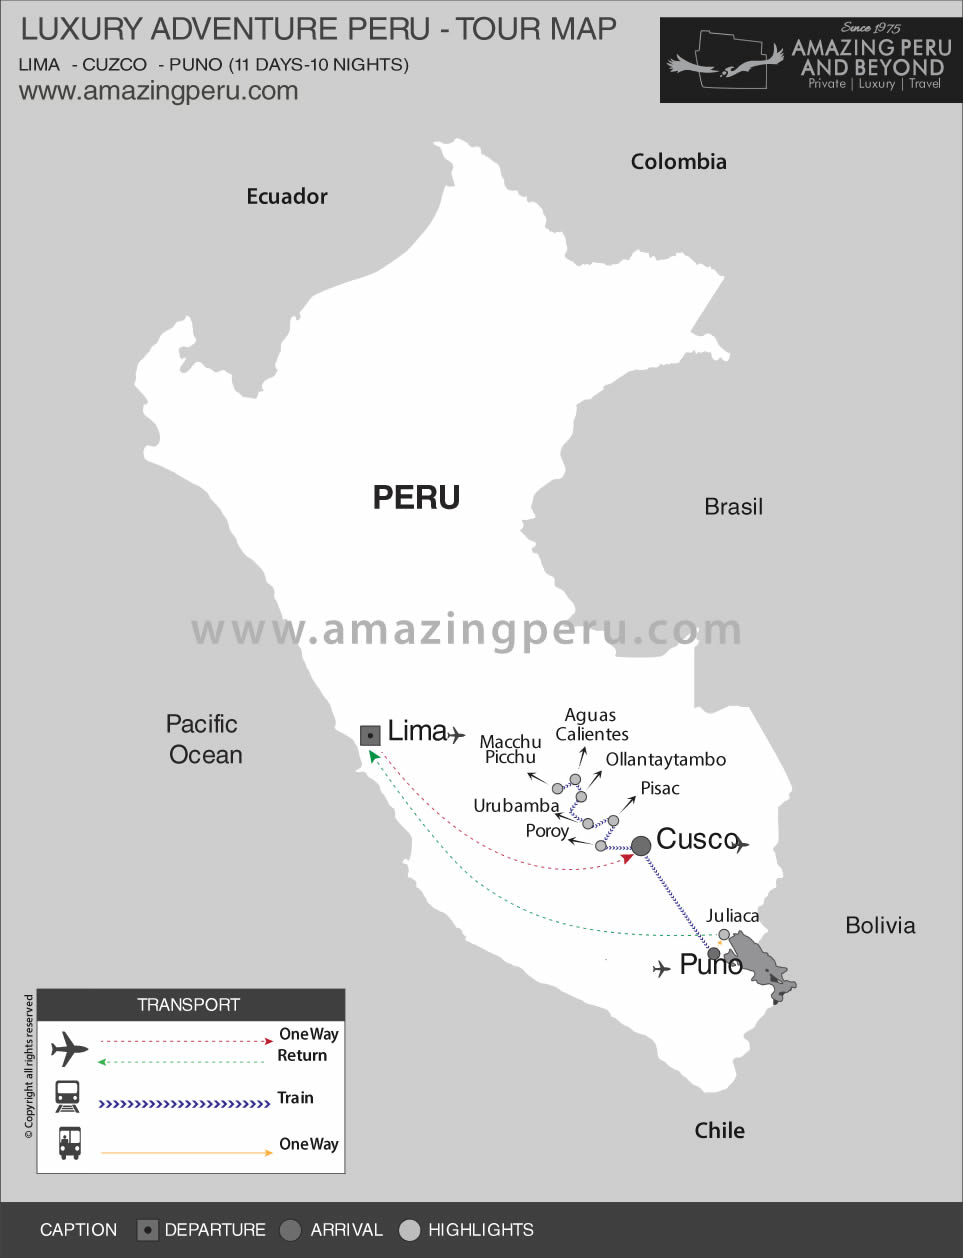 Luxury Adventure Peru Tour 1 - 11 days / 10 nights.